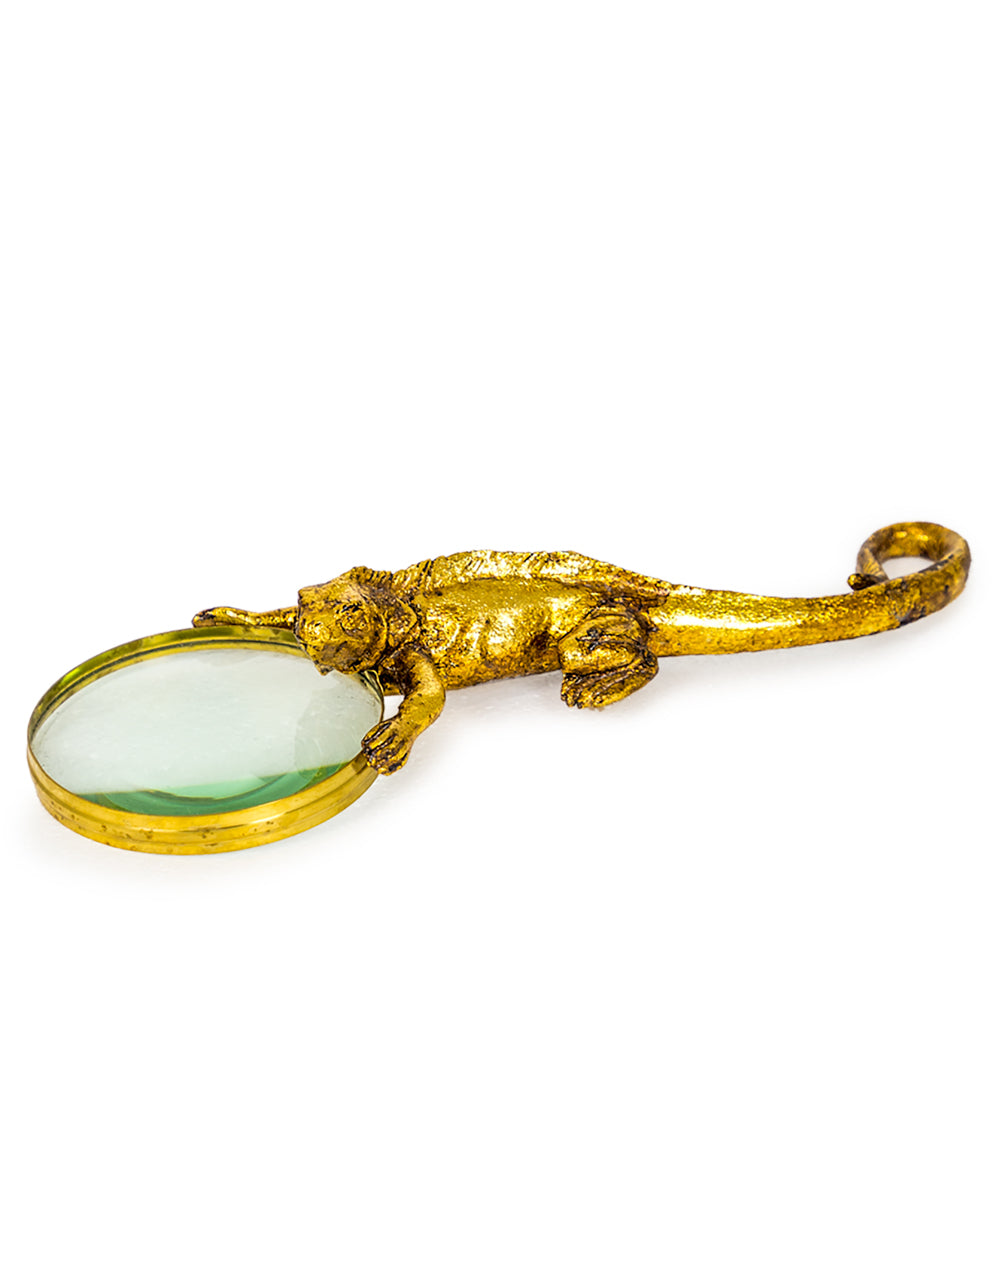 Golden Lizard Magnifying Glass